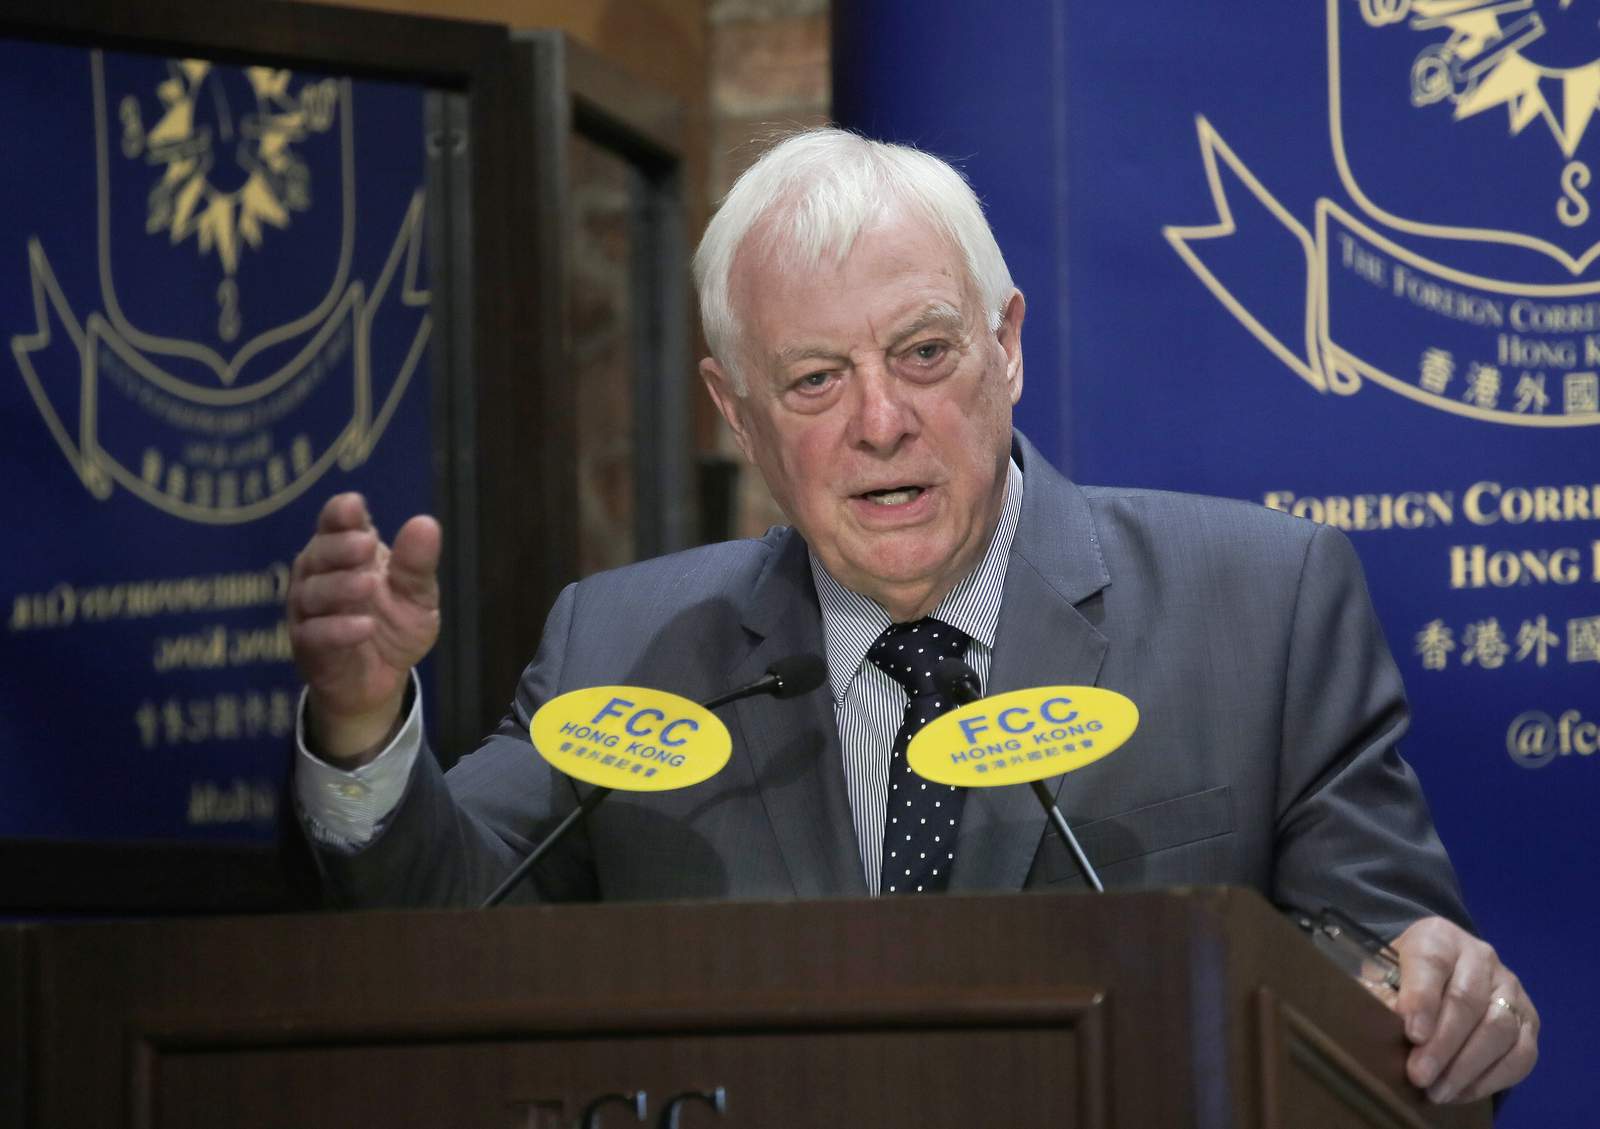 Last British governor says Hong Kong 'betrayed' by China